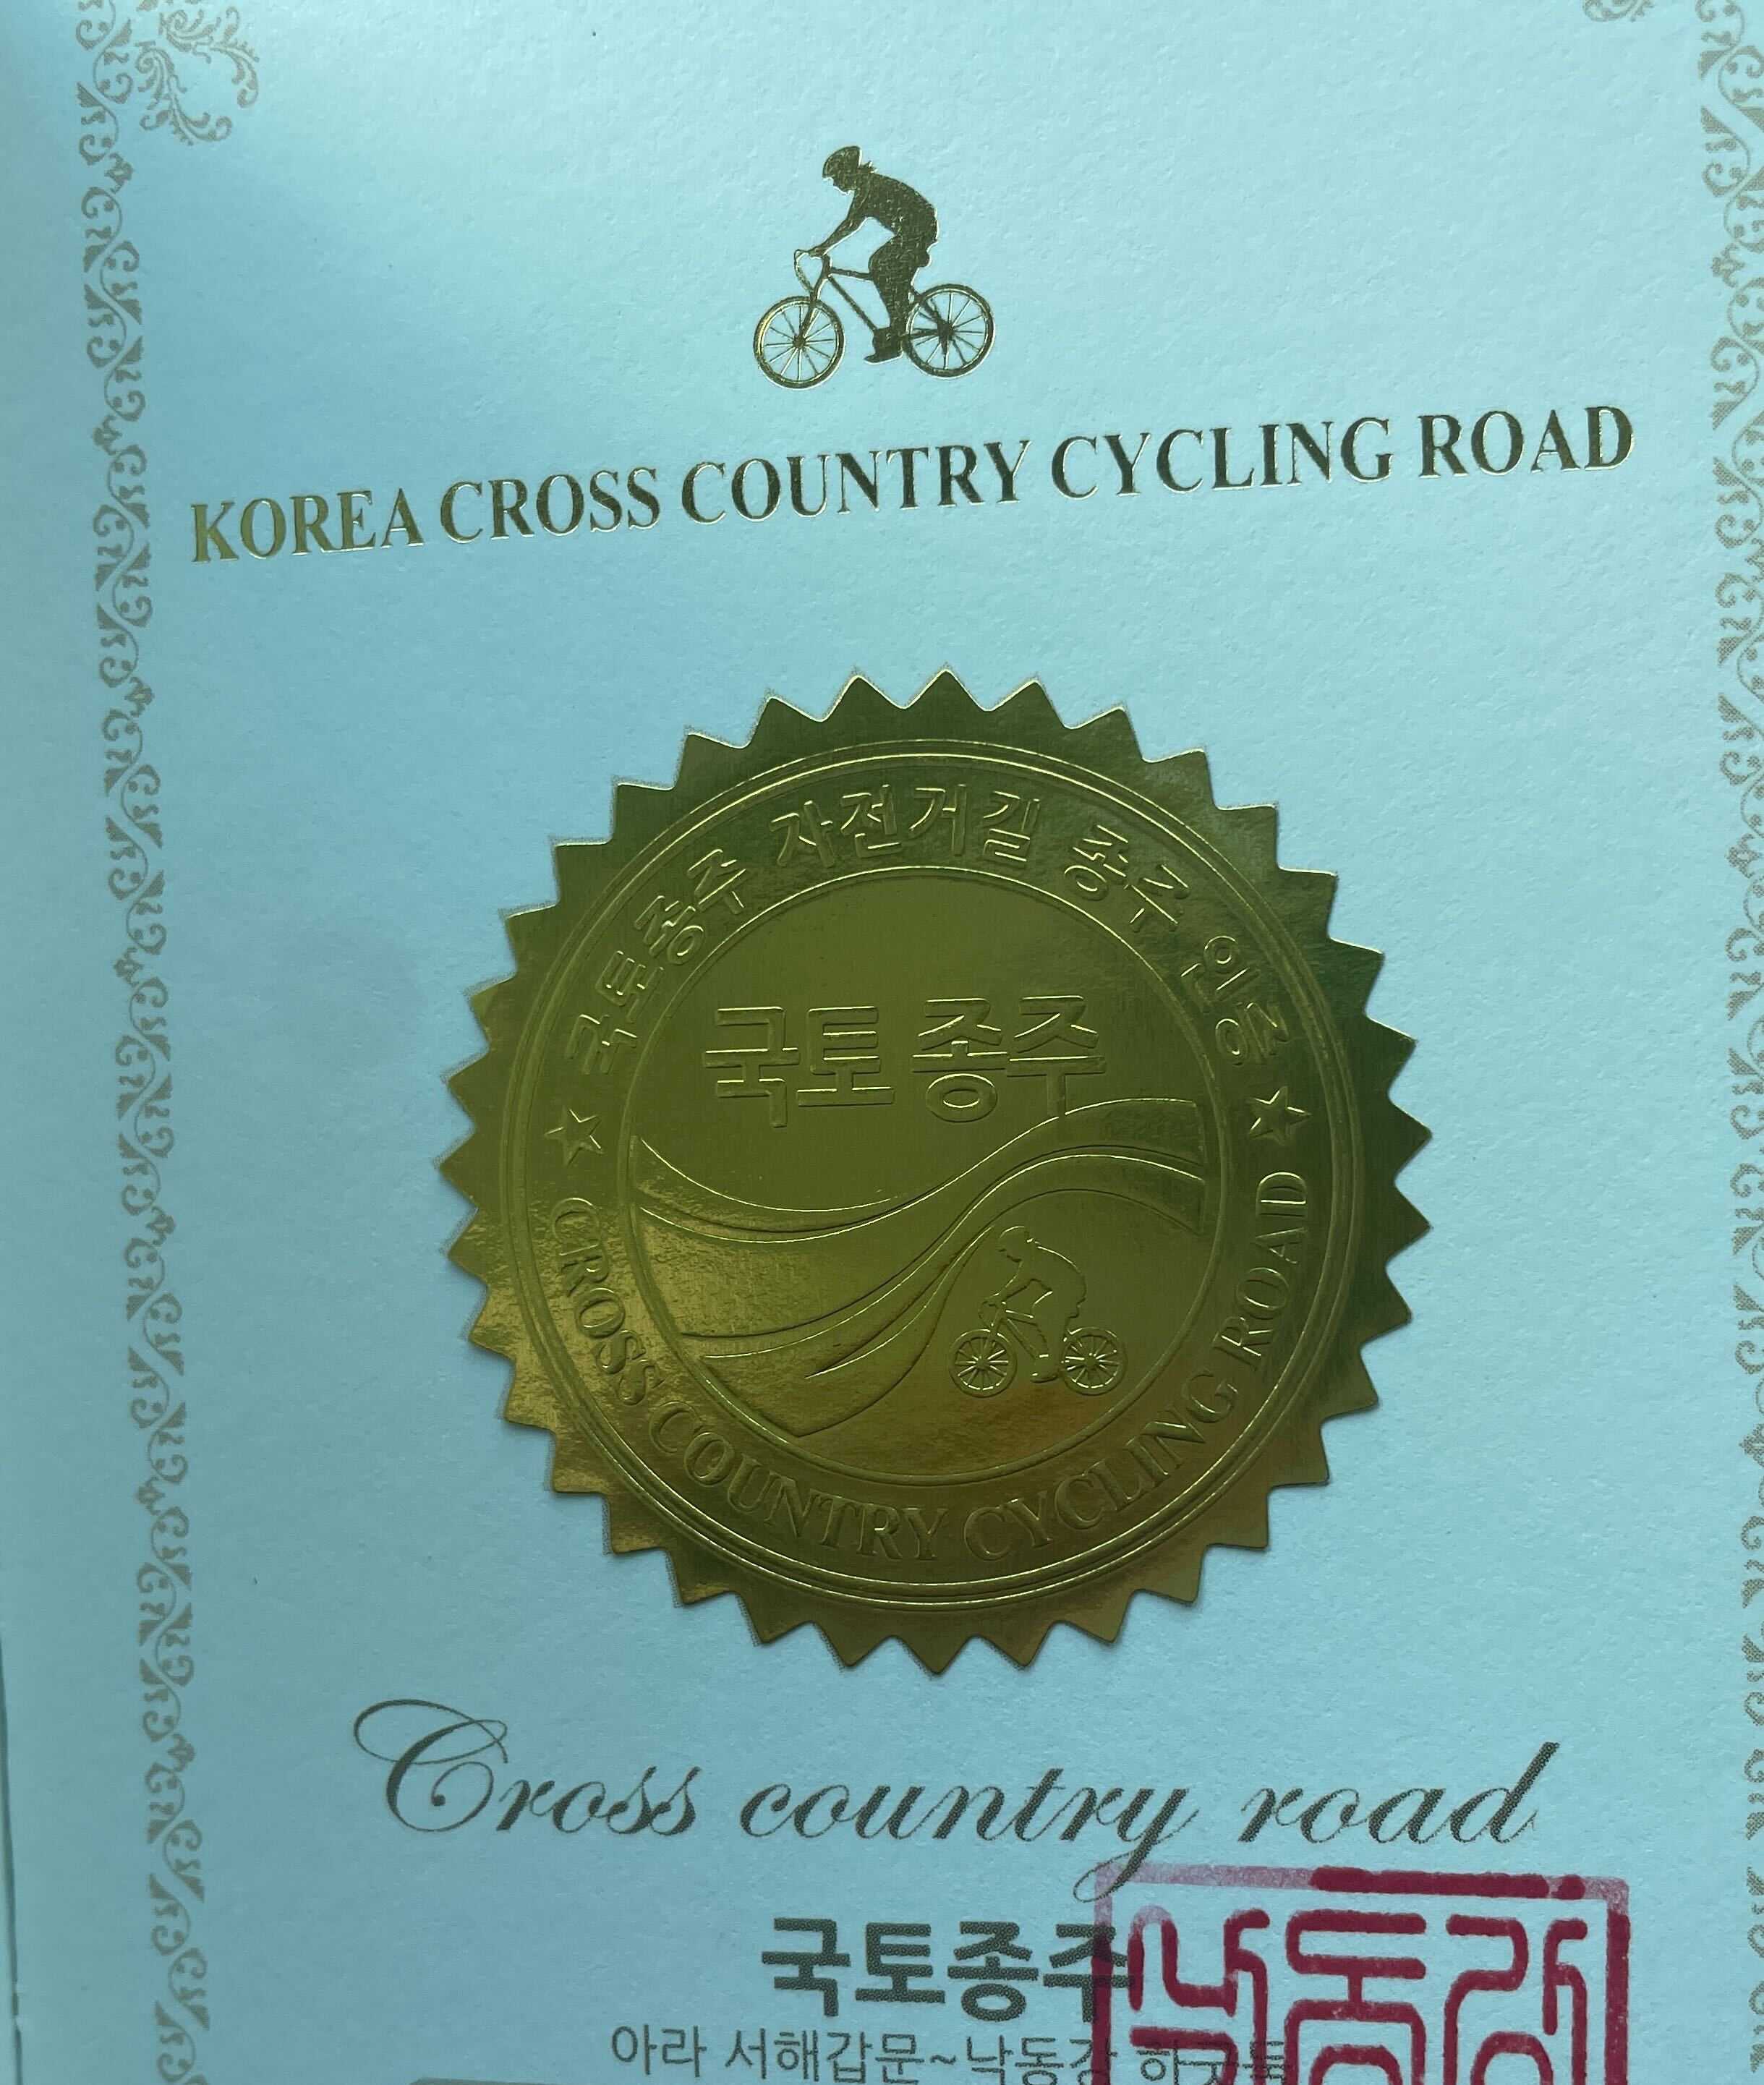 bike-journey-certification